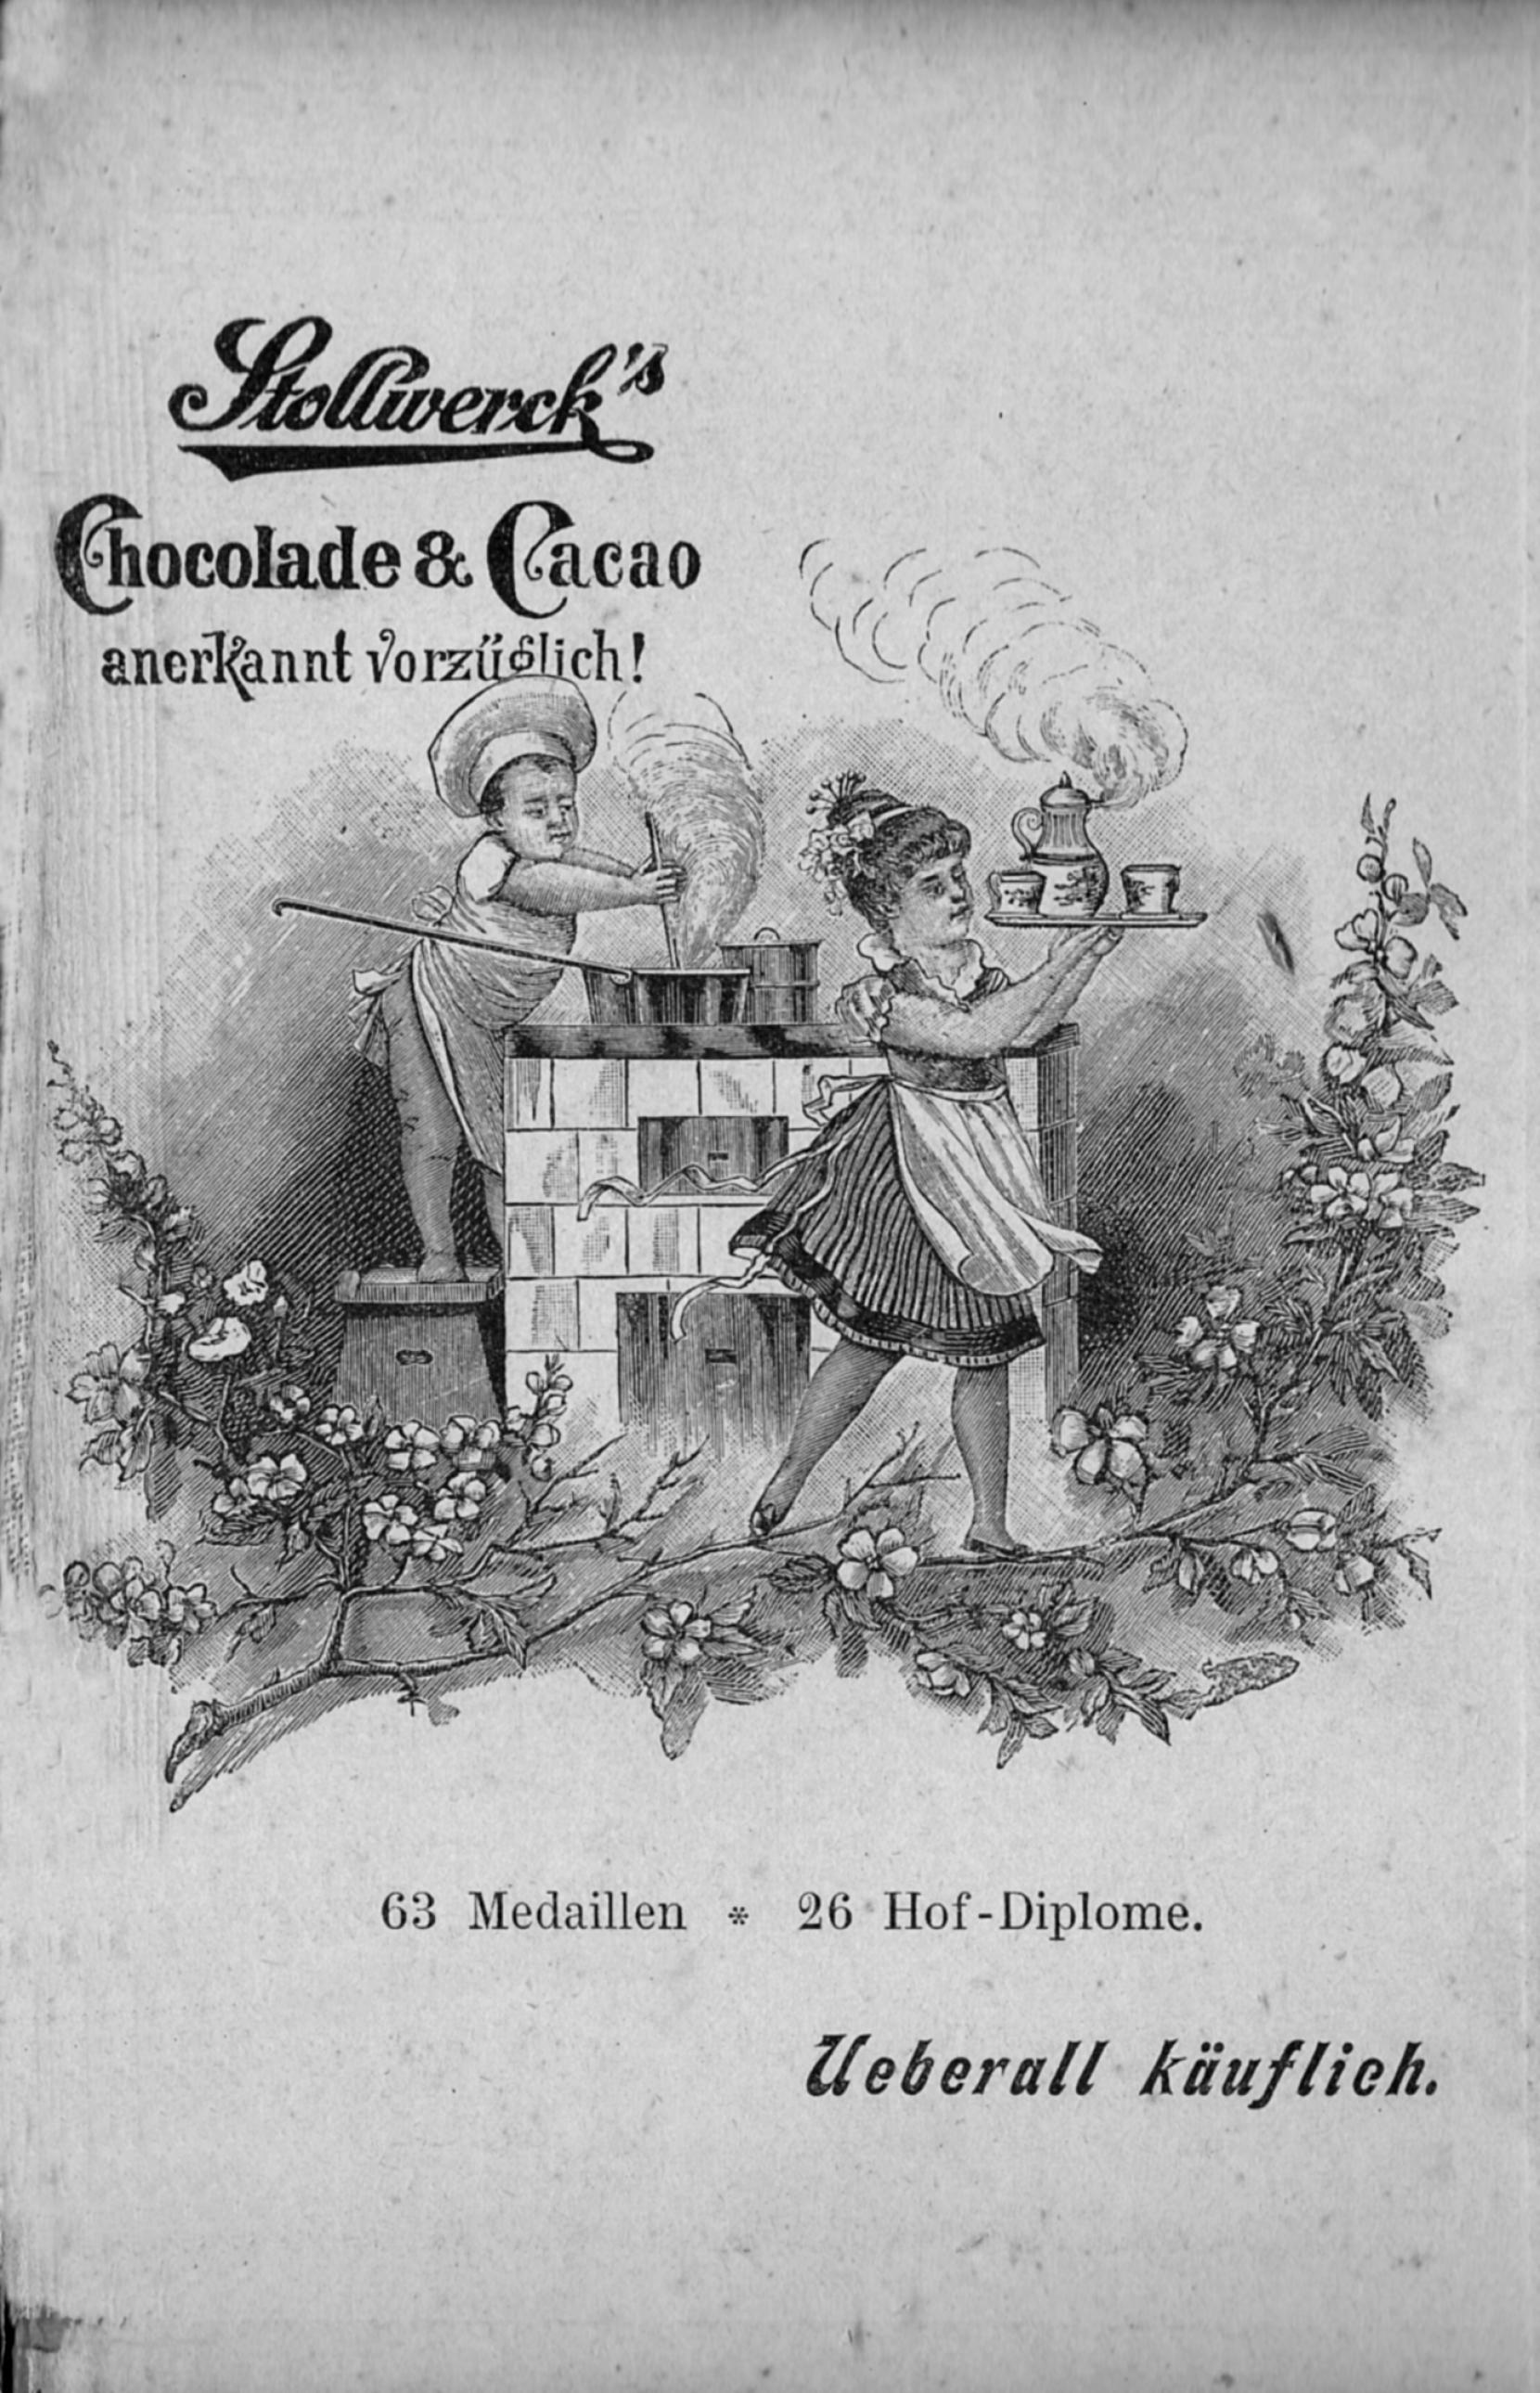 Werbung der Firma Stollwerck, aus: Jahrbuch der Berliner Morgenzeitung, 1896. (